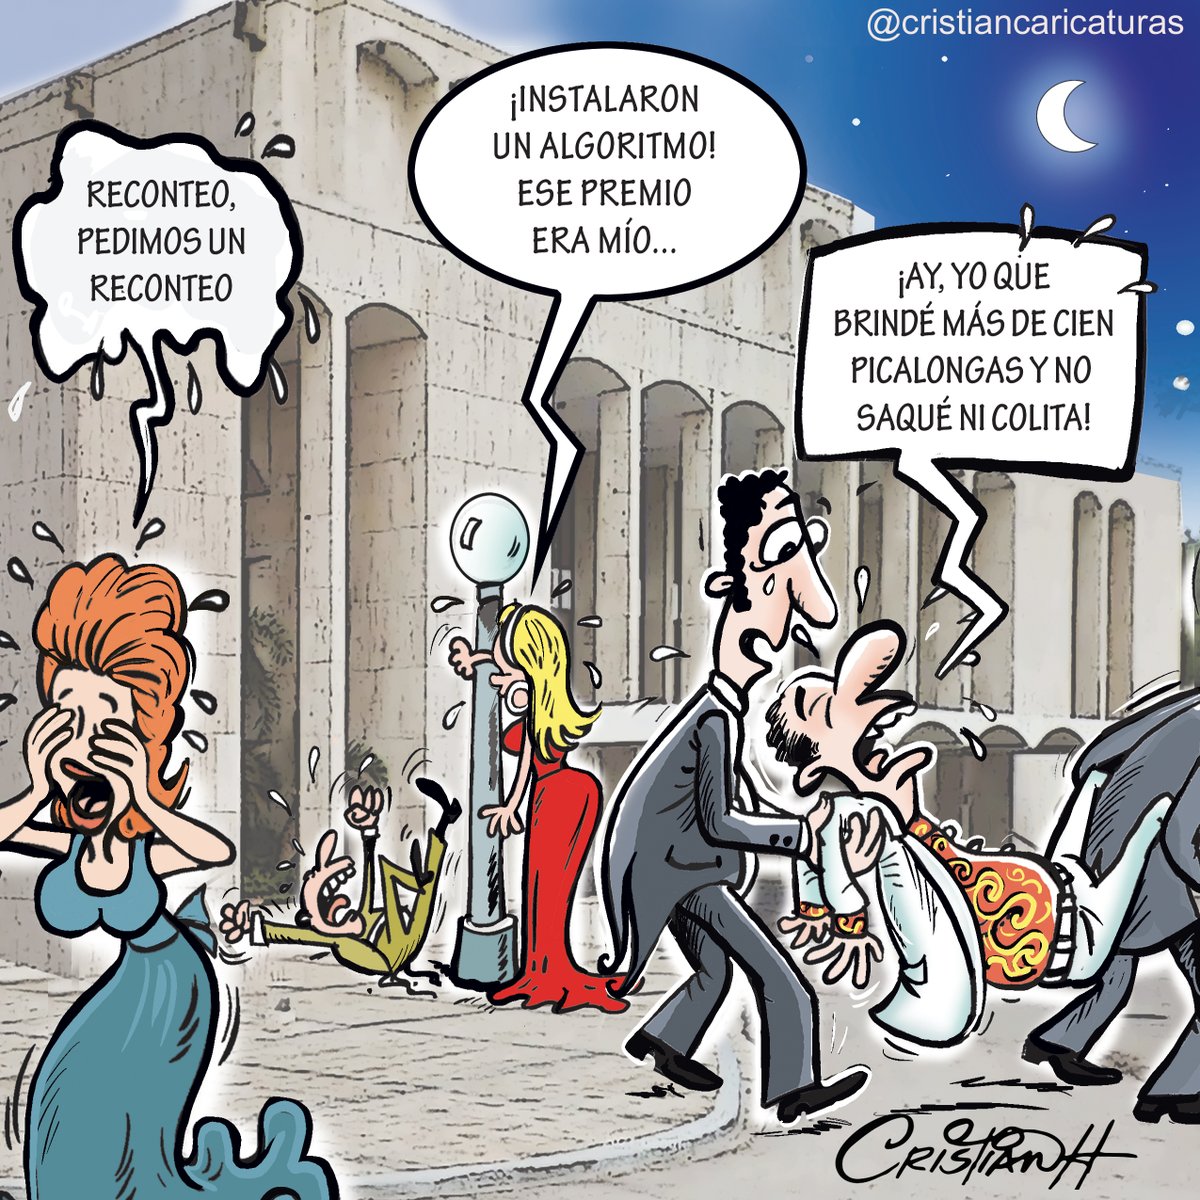 Reconteo, pedimos un reconteo...

Mi caricatura del miércoles 13 de marzo en el periódico @ElDia_do
.
.
.
.
.
#PremiosSoberano #pataleo #otravez #cristiancaricaturas #reconteo